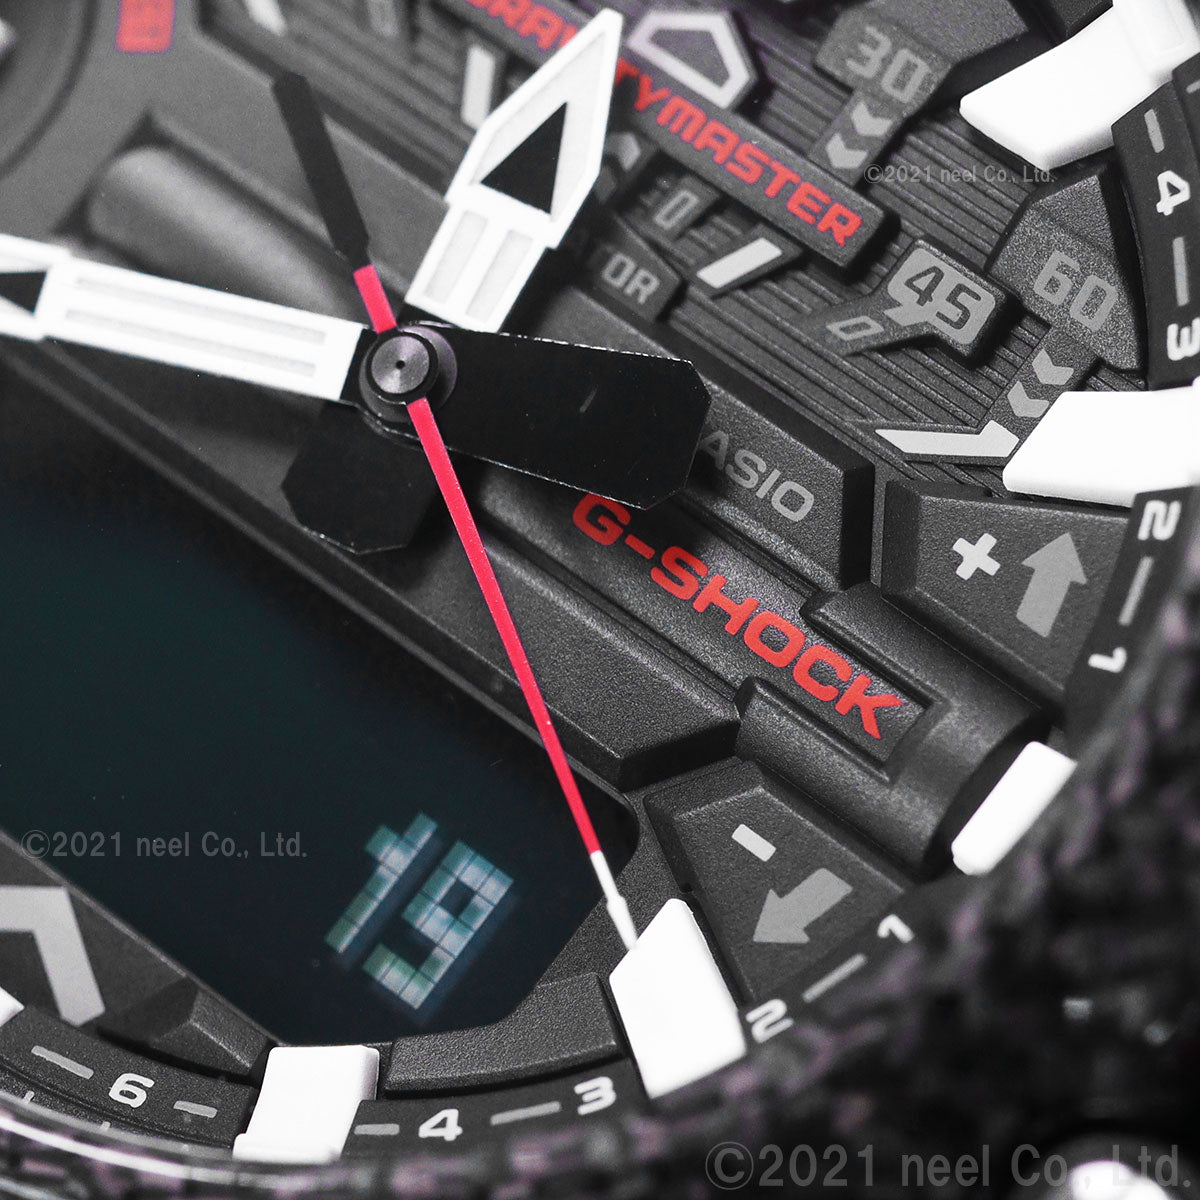 G-SHOCK カシオ Gショック グラビティマスター GRAVITYMASTER CASIO 腕時計 メンズ MASTER OF G GR-B200-1AJF